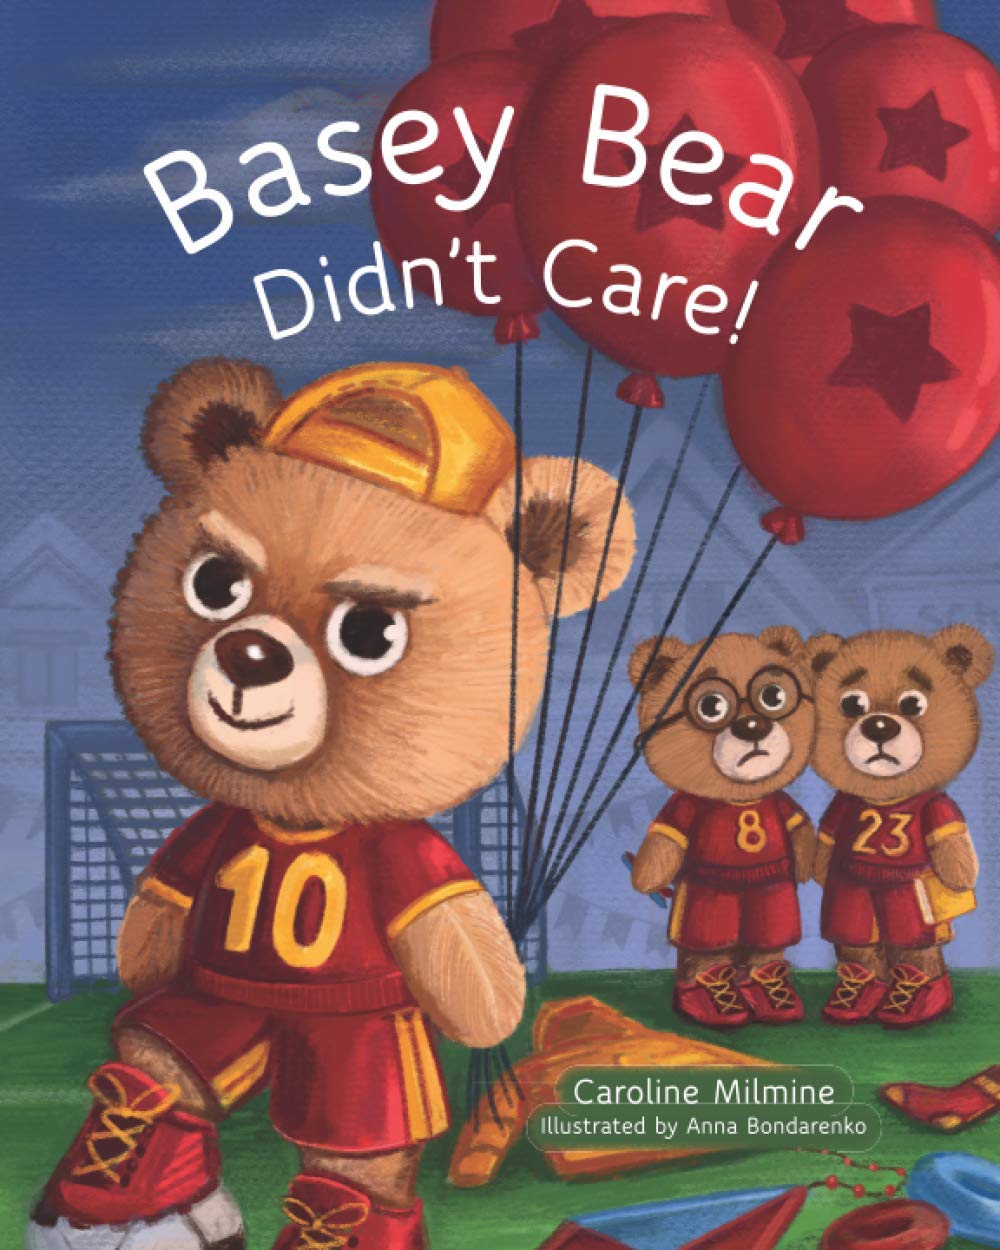 Basey Bear Didn’t Care